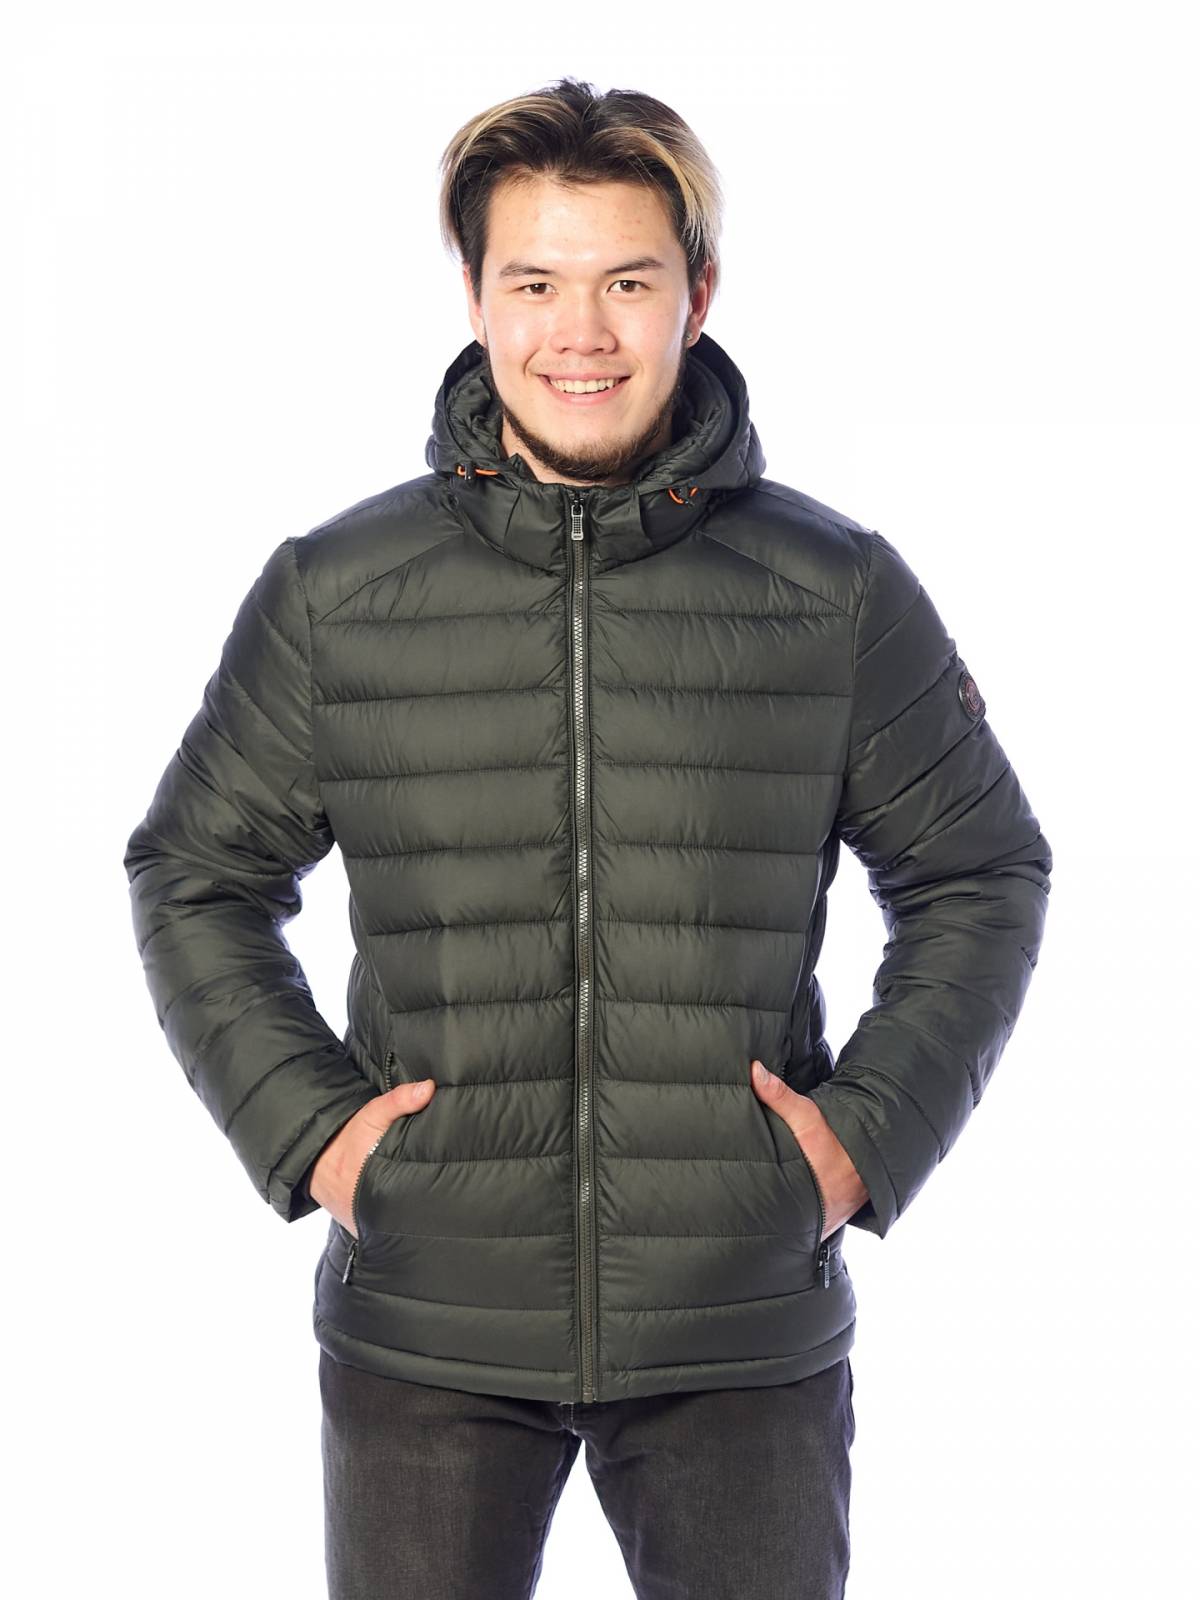 Зимняя куртка мужская Zero Frozen 3571 зеленая 50 RU